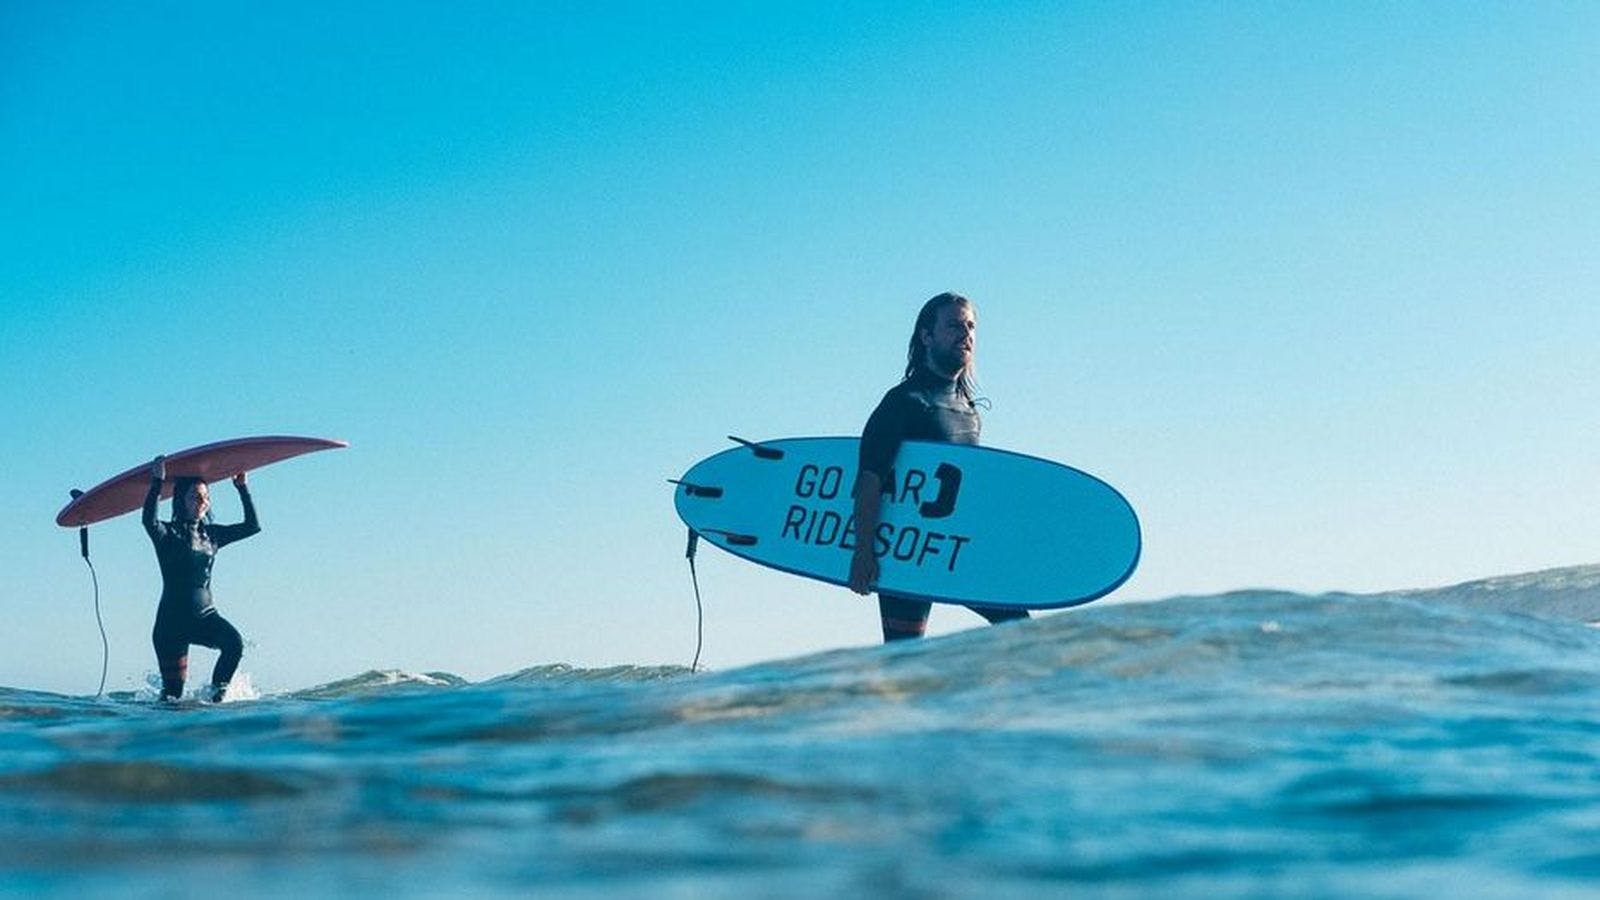 leren surfen: voorbereiden op je surftrip